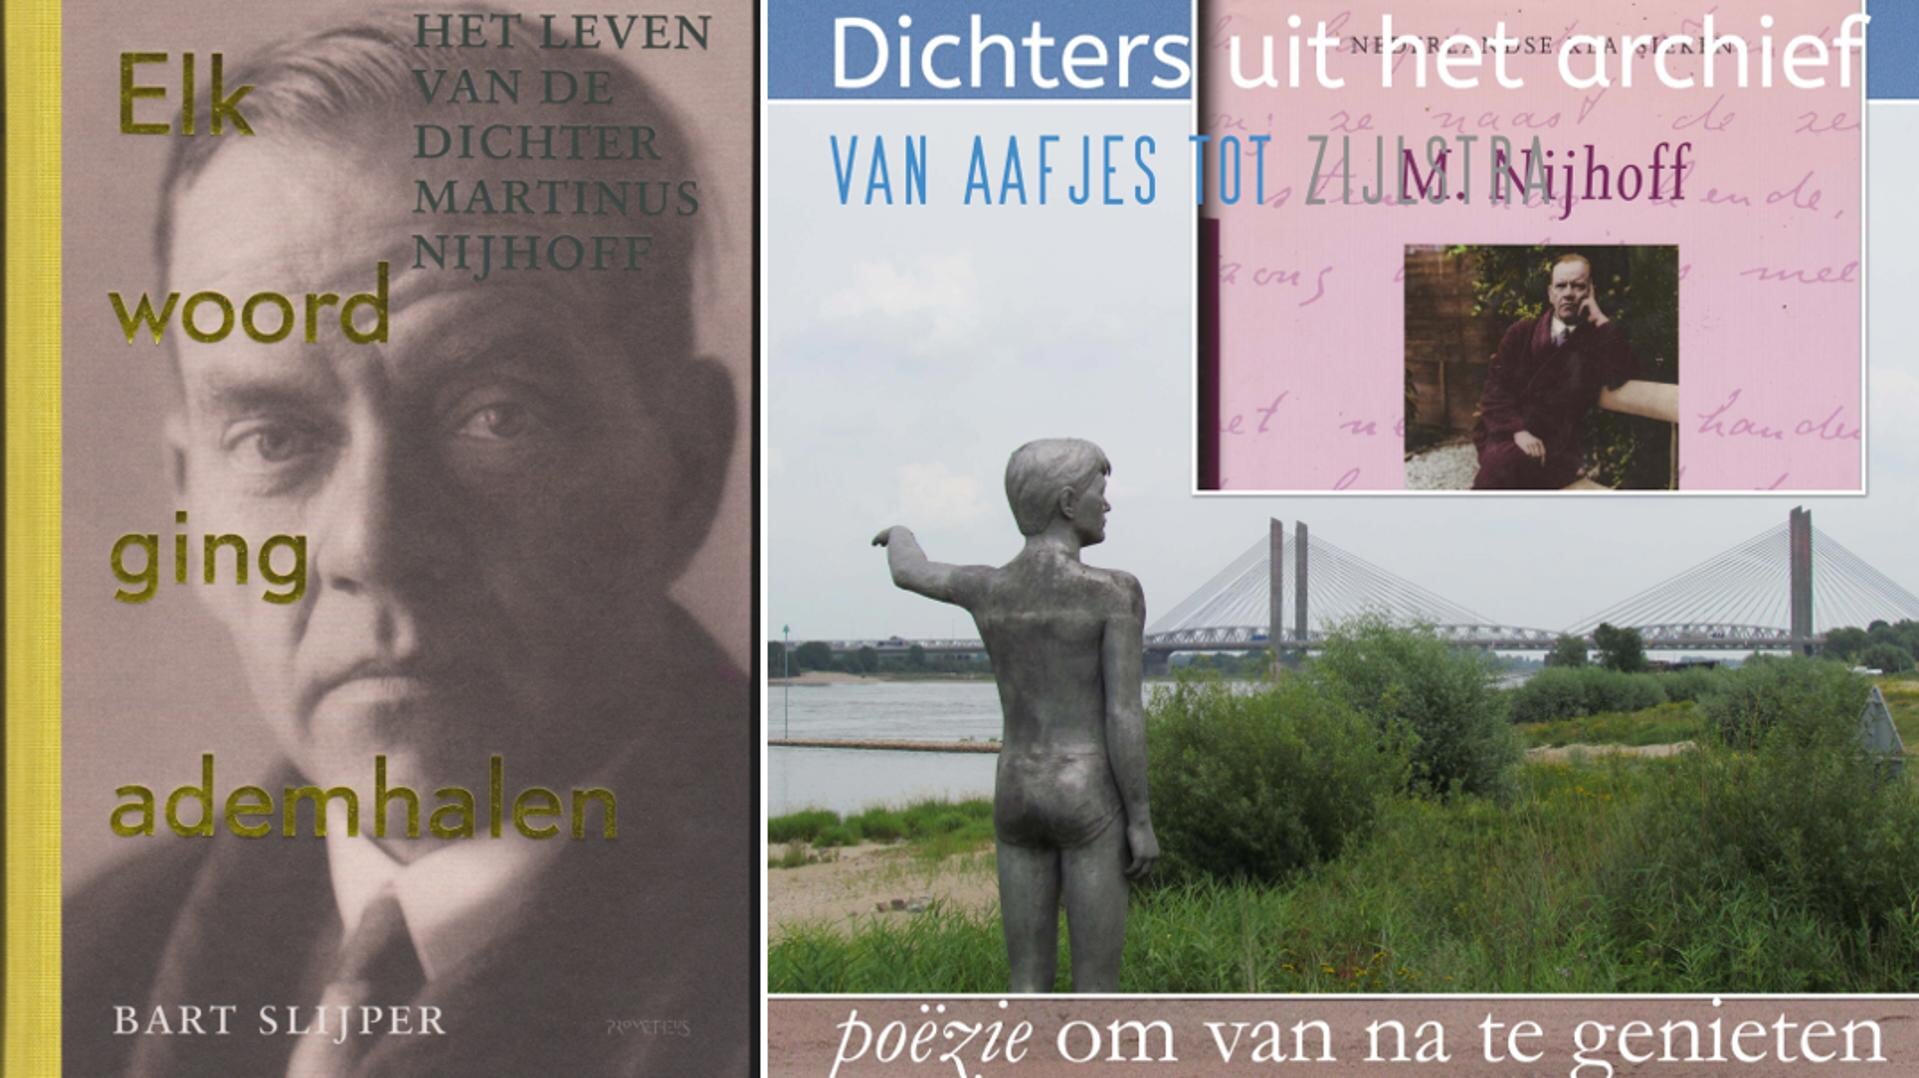 Omslag biografie over Martinus Nijhoff, Nijhoff-illustratie in het kader van een serie over dichters en de naar Nijhoff genoemde brug bij Zaltbommel. Foto: PR